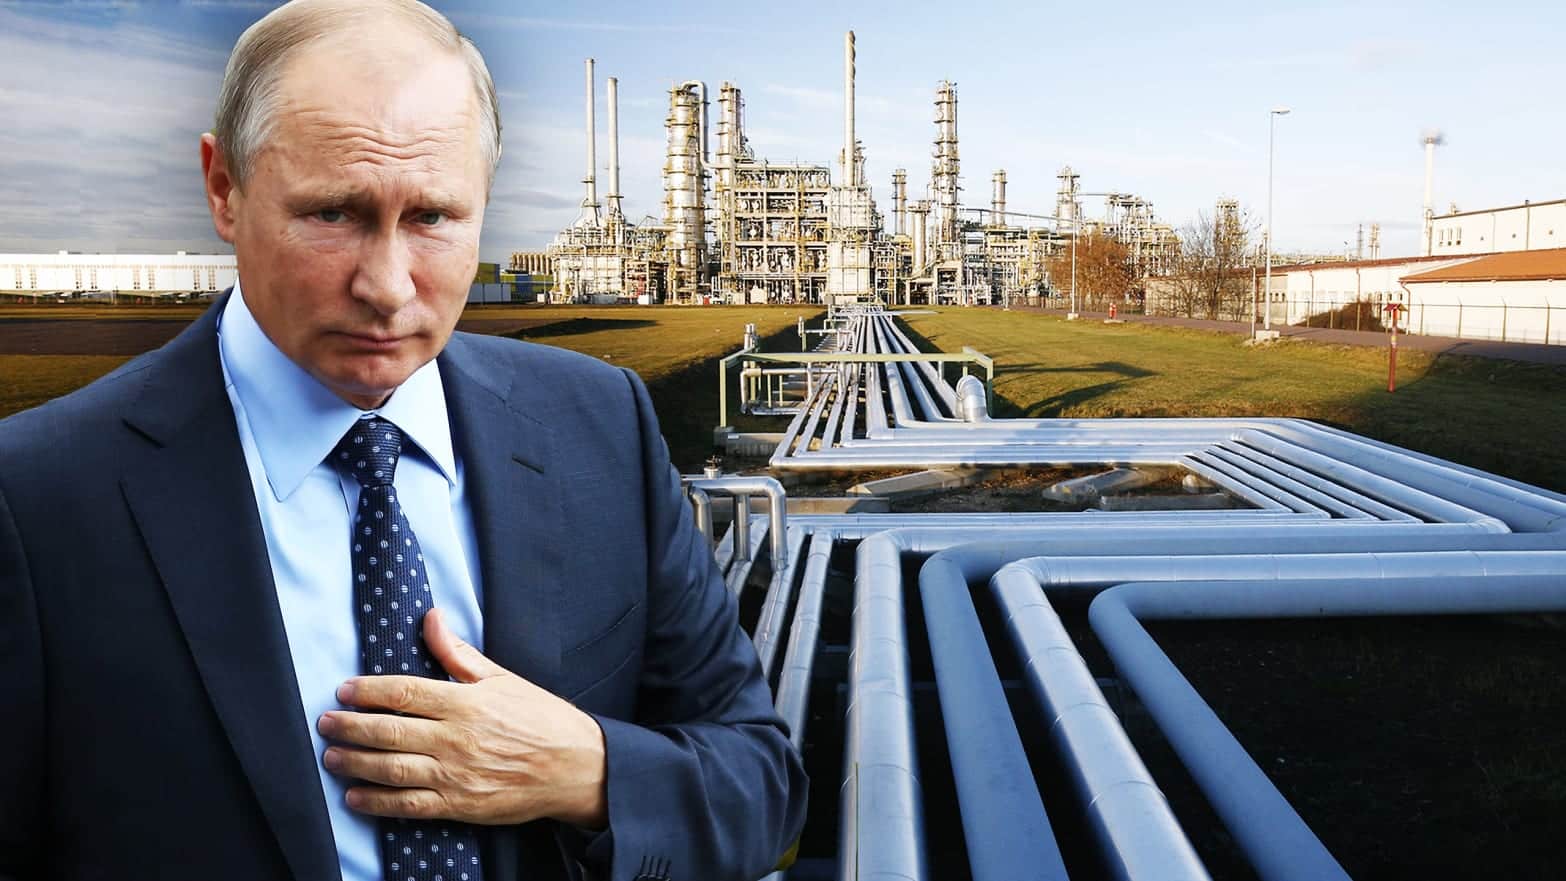 क्रेमलिन प्रतिबंधों को हटाए जाने तक यूरोपीय गैस शिपमेंट में न्यूनतम कटौती करेगा